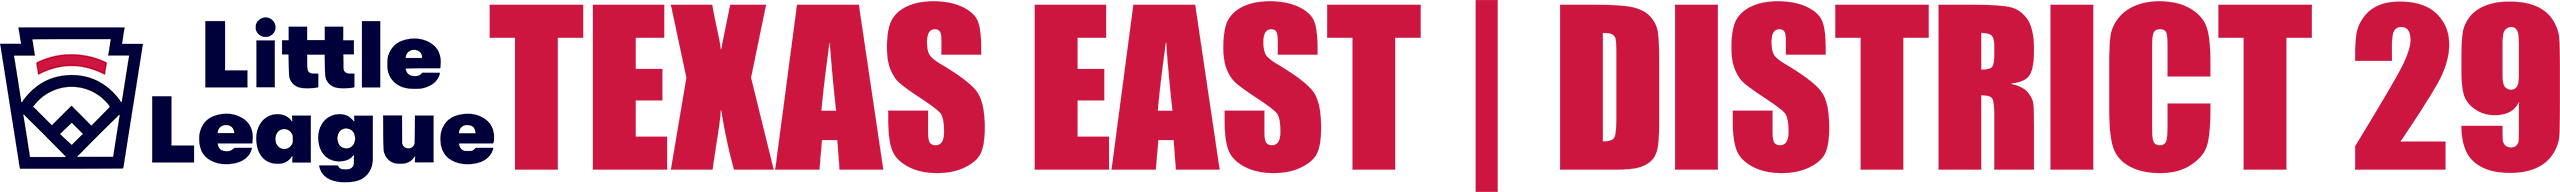 Little League International Texas East District 29 Logo